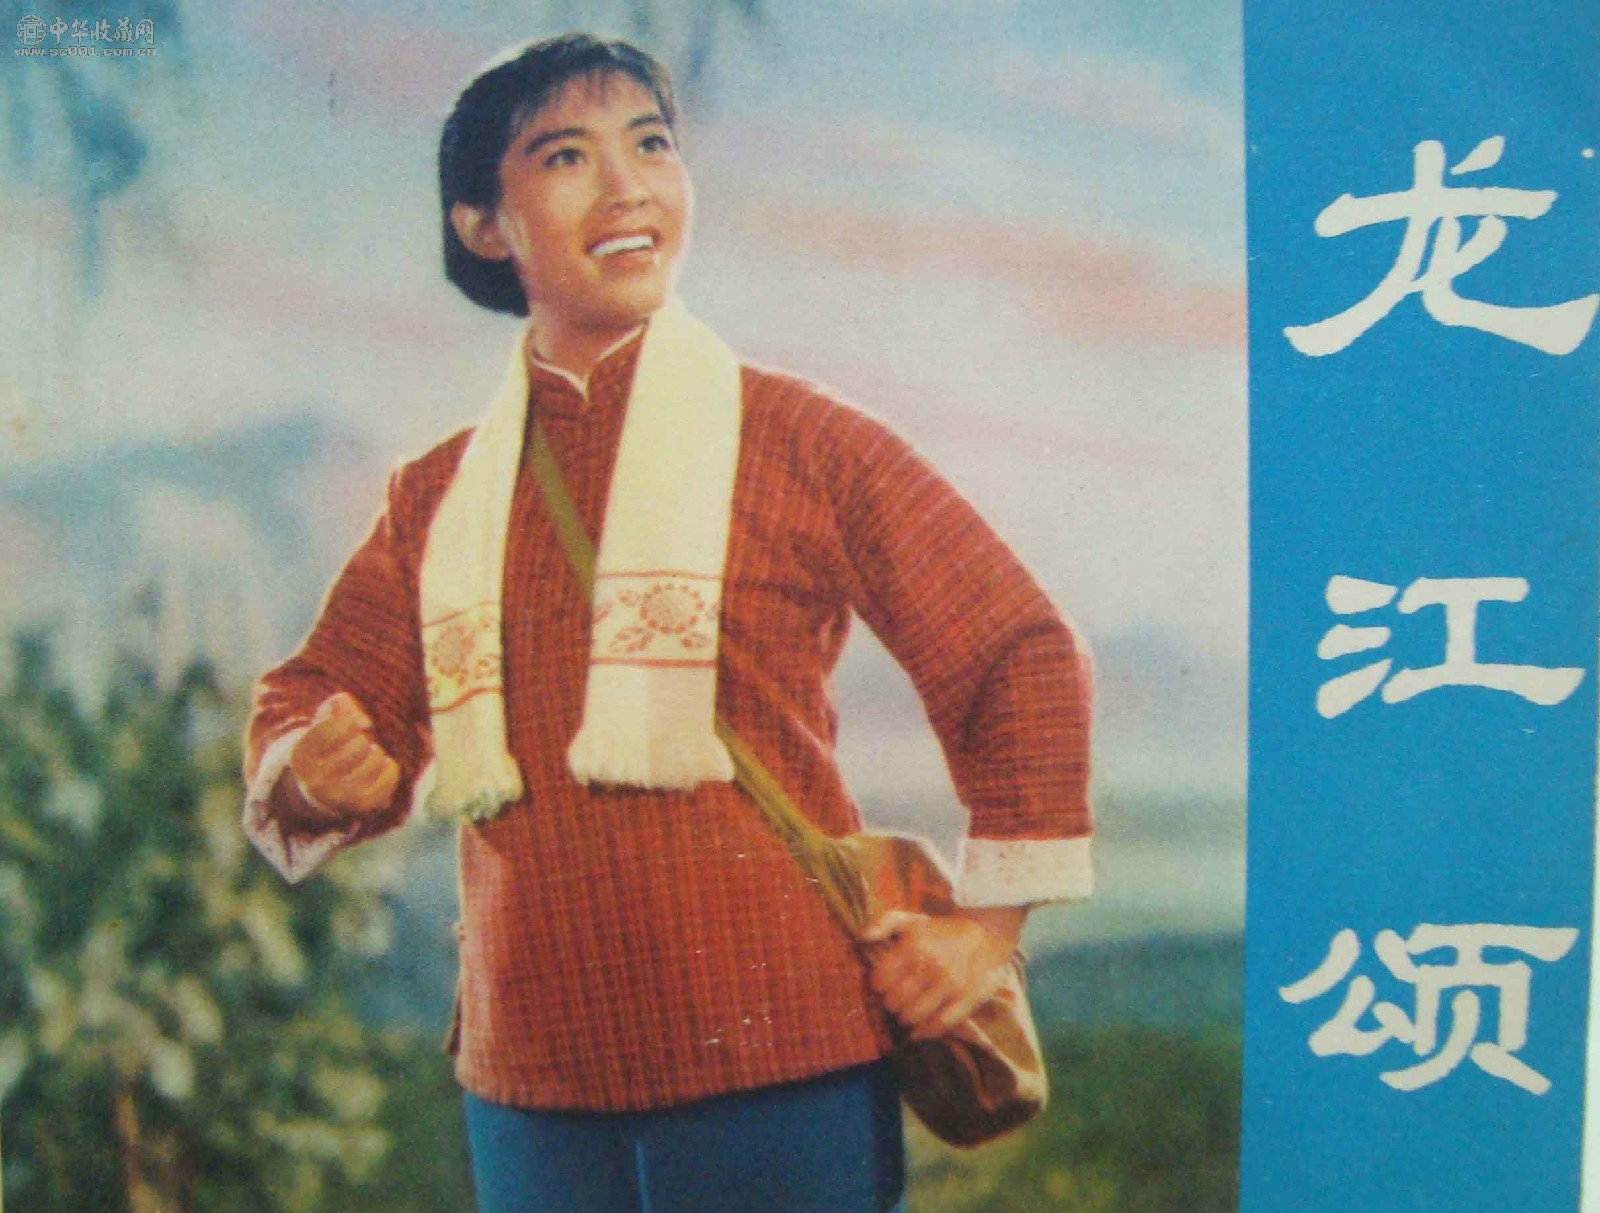 龍江頌(1972年李炳淑主演電影)